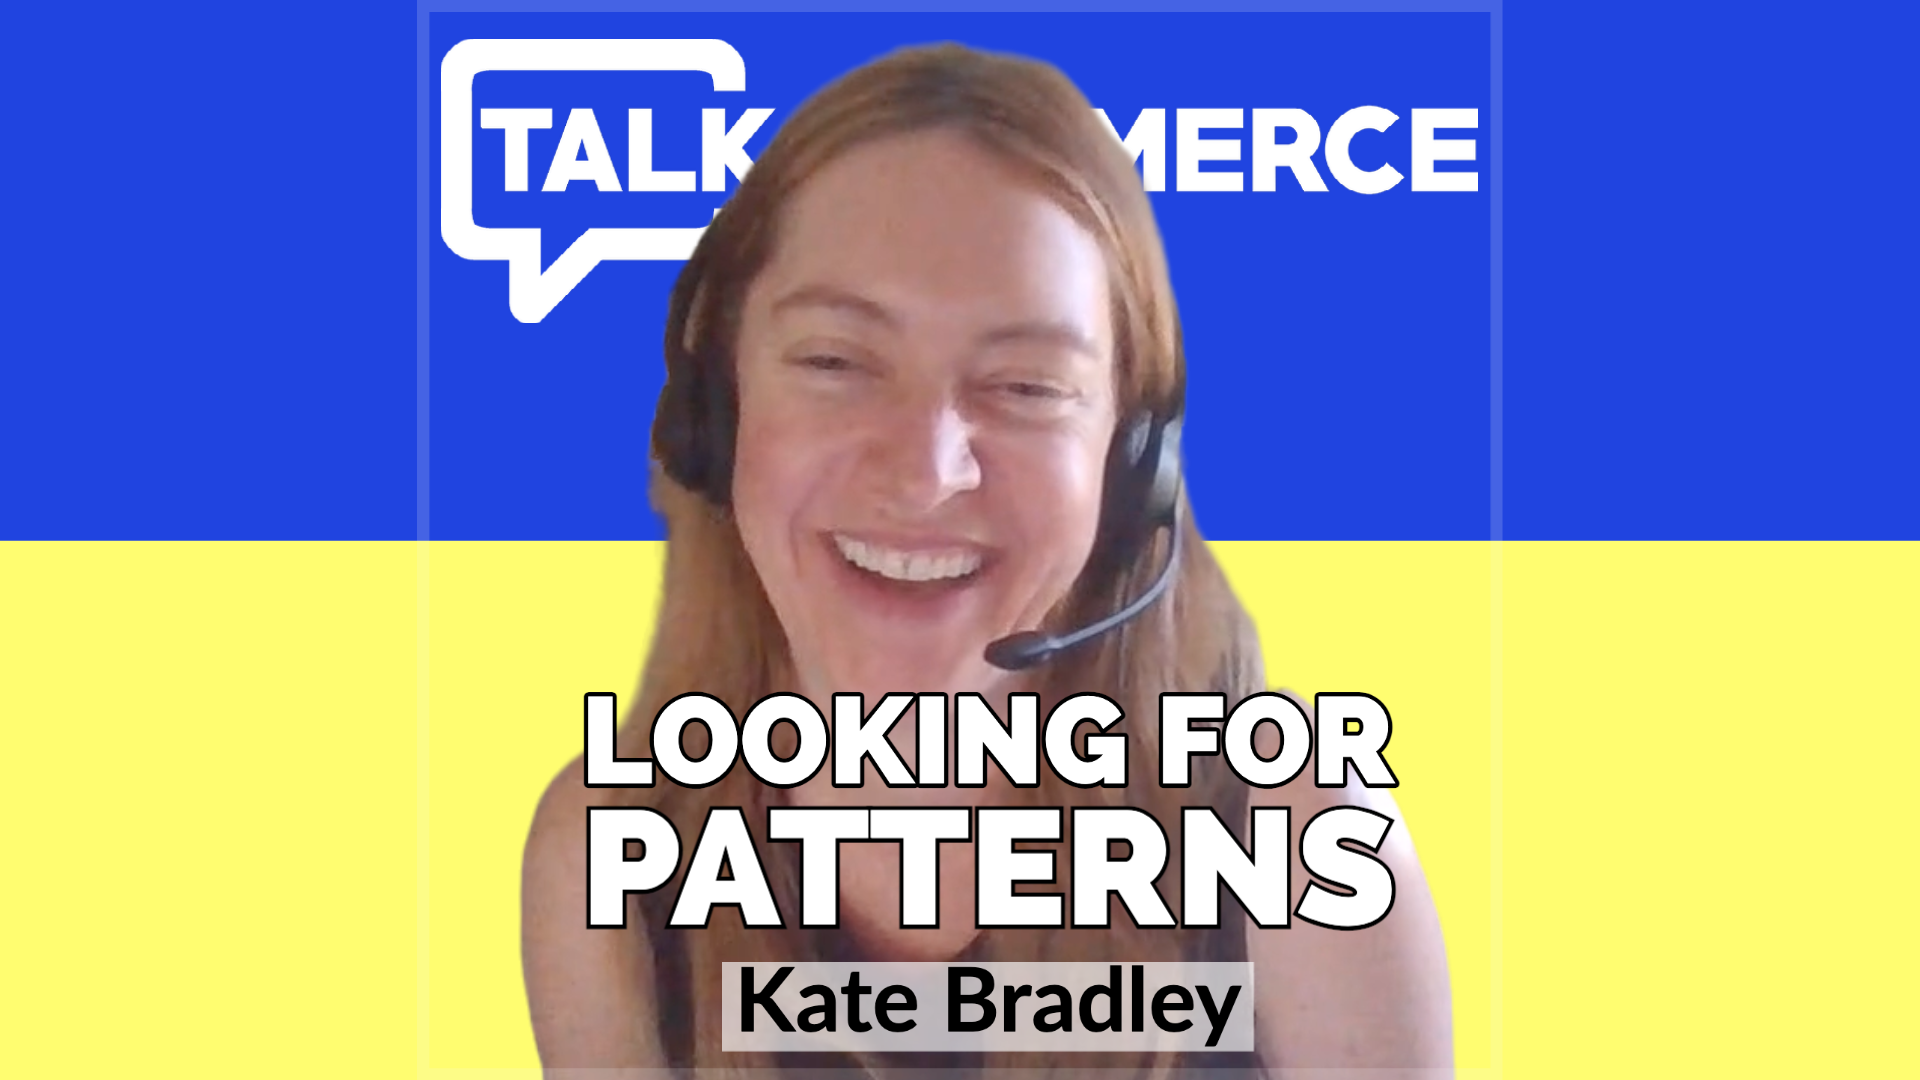 Talk-Commerce Kate-Bradley